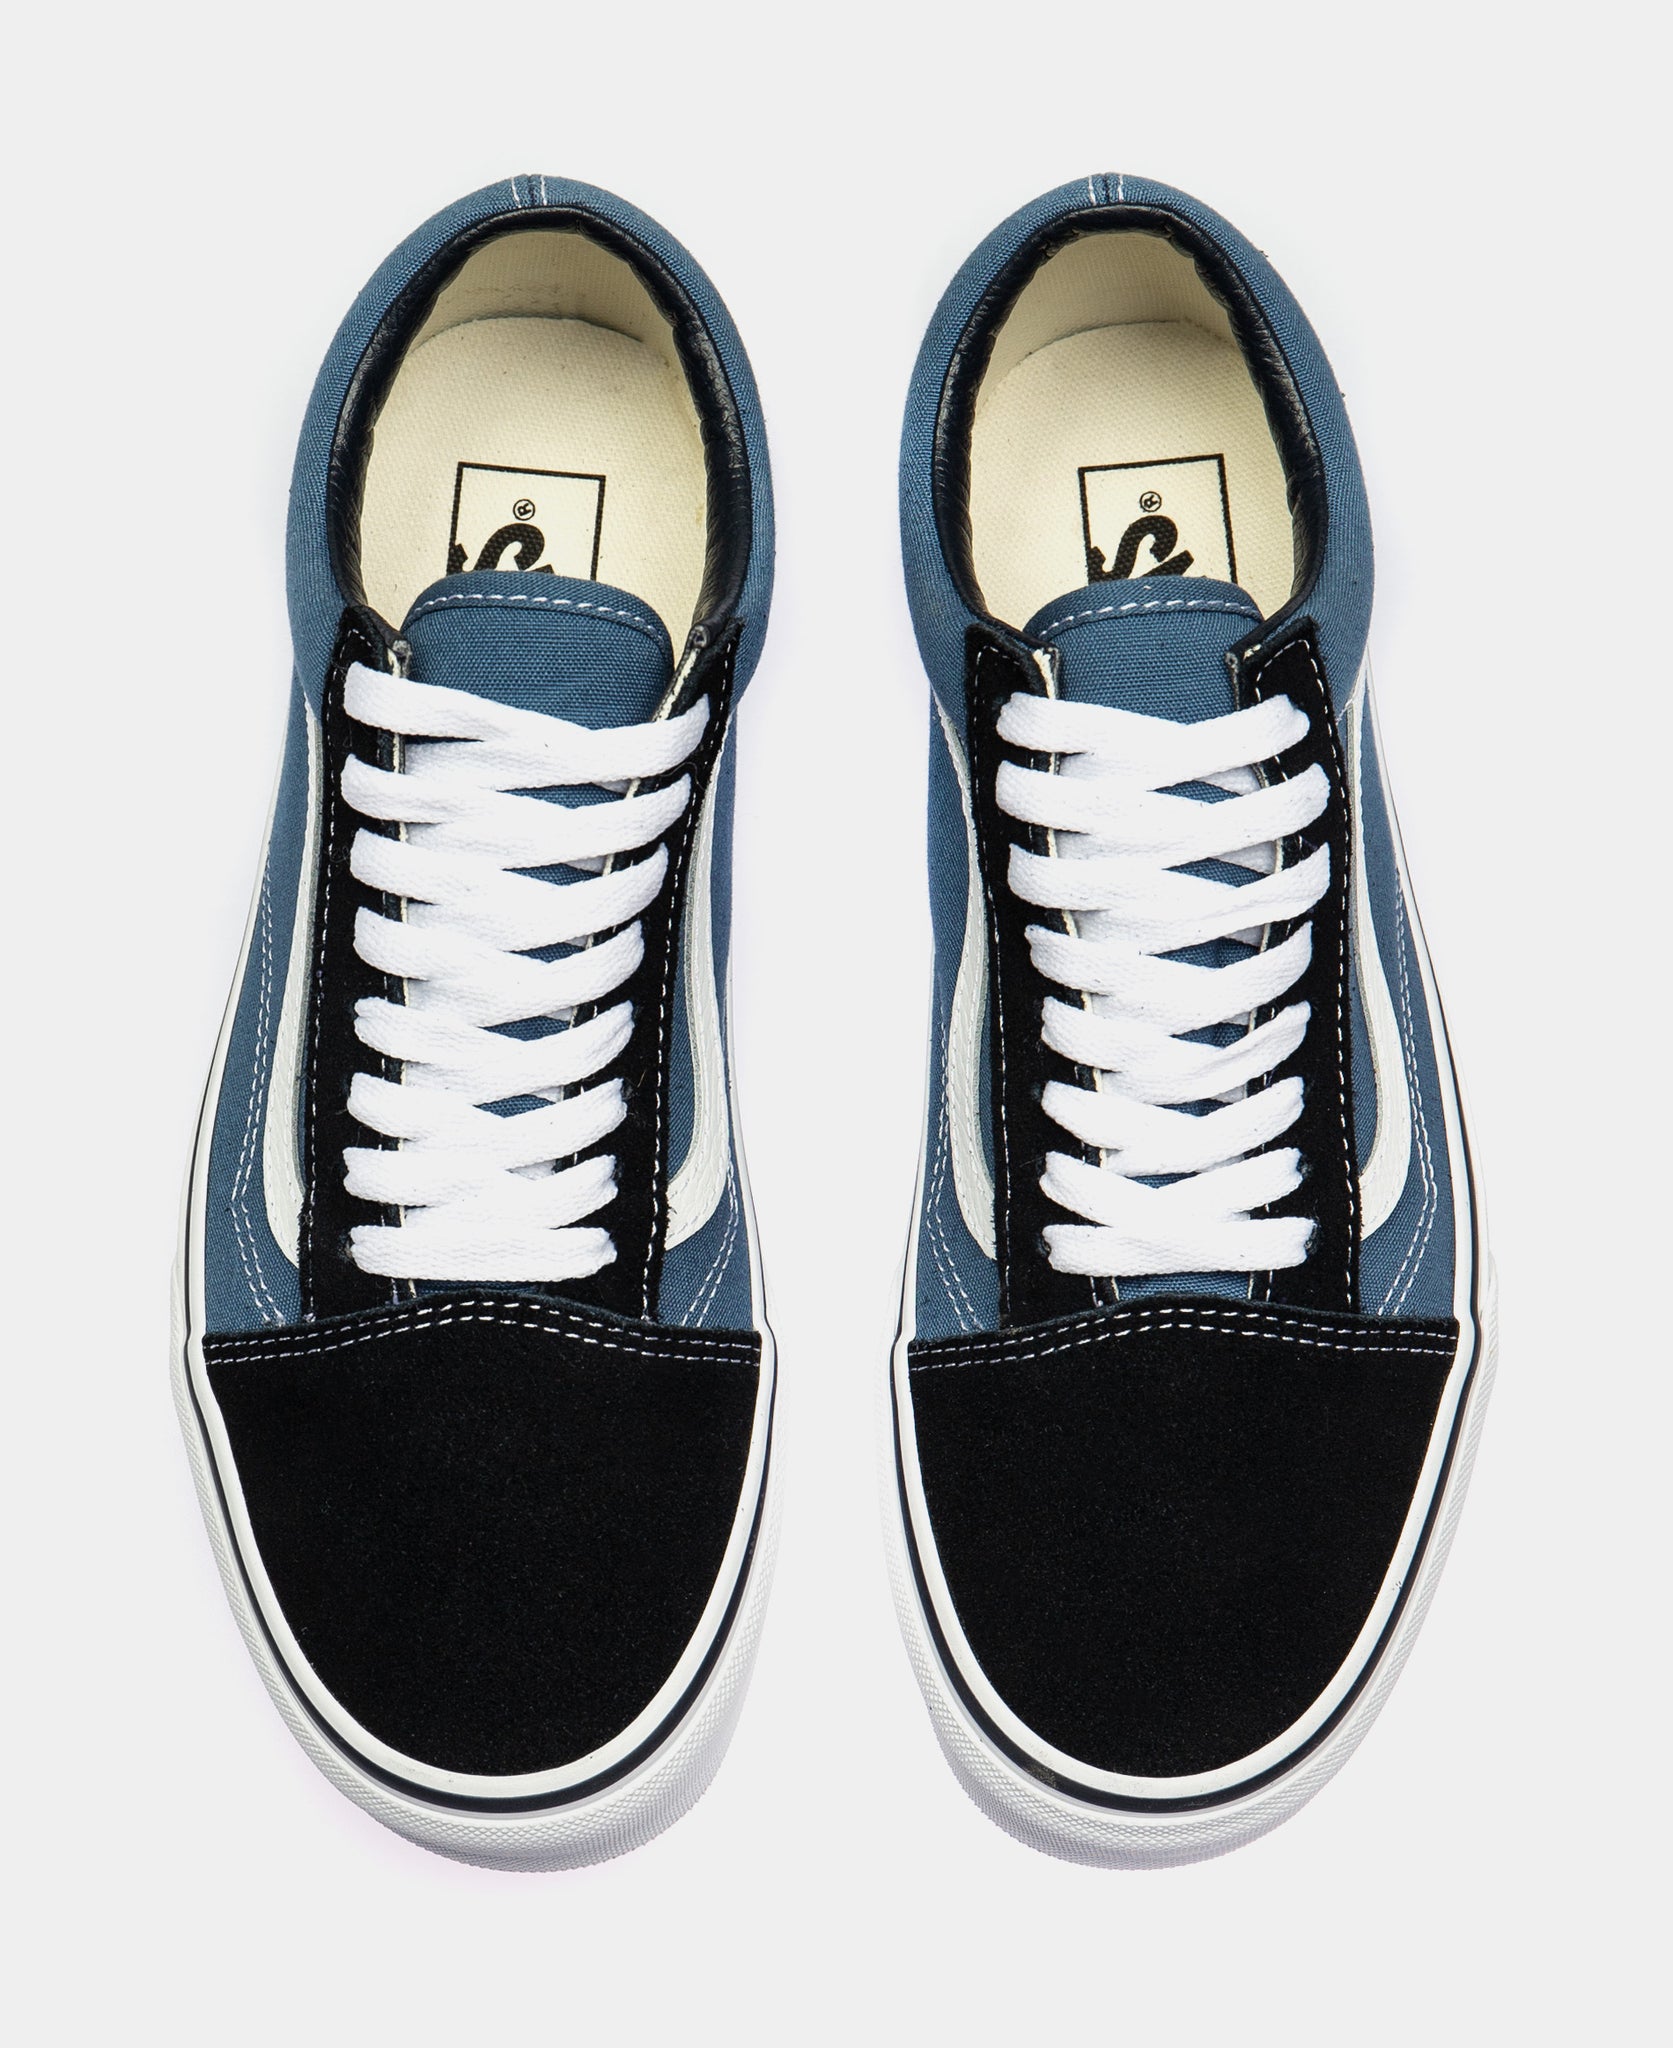 Old Skool Low Mens Skate Shoe (Blue/Black)